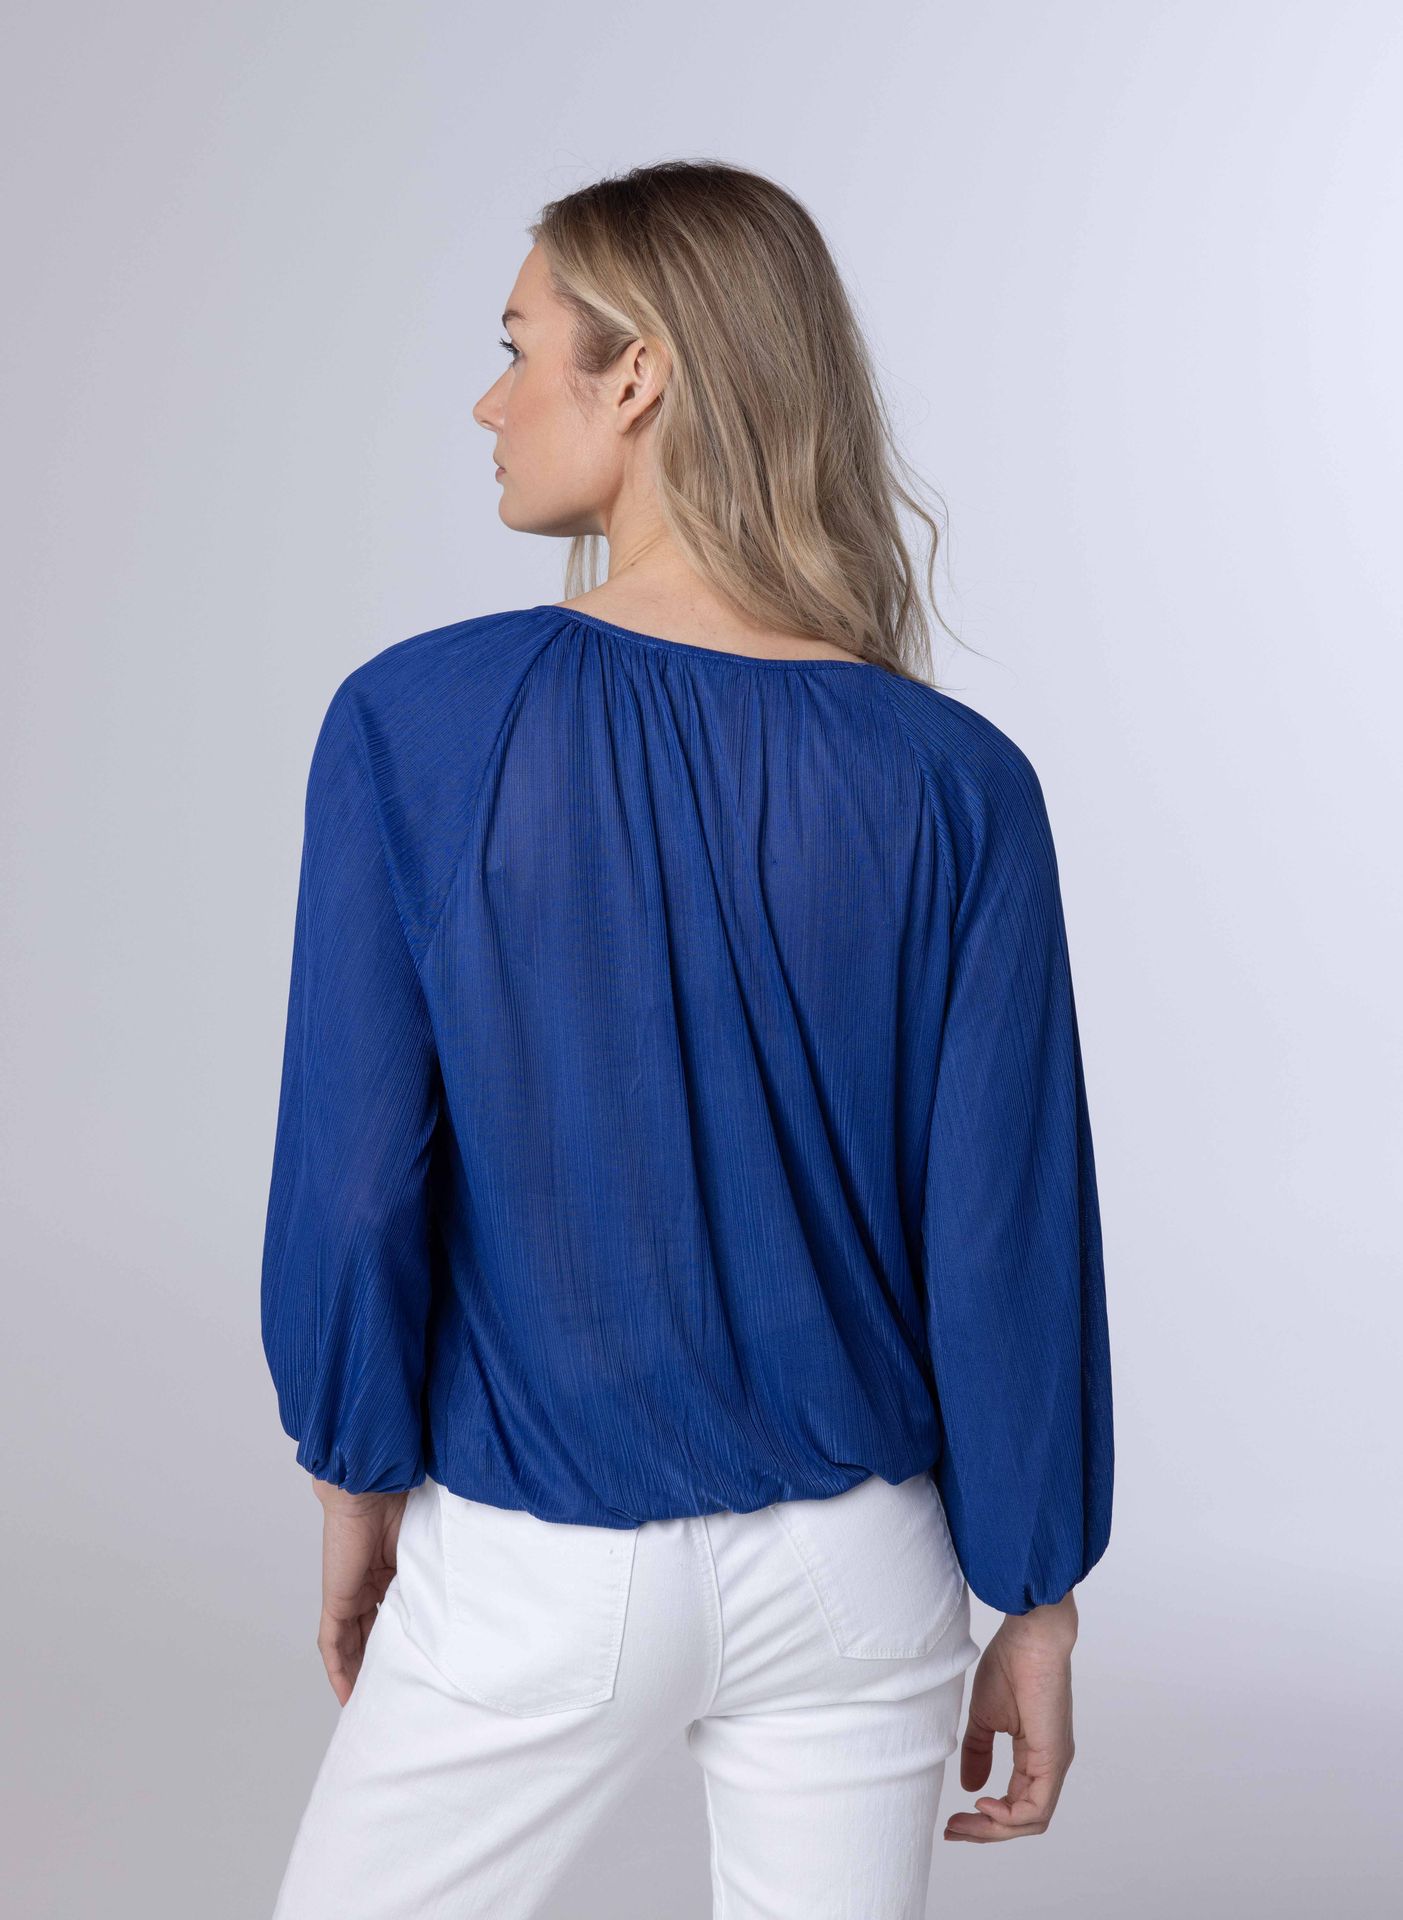 Norah Blauwe blouse met pofmouwen royal blue 213424-466